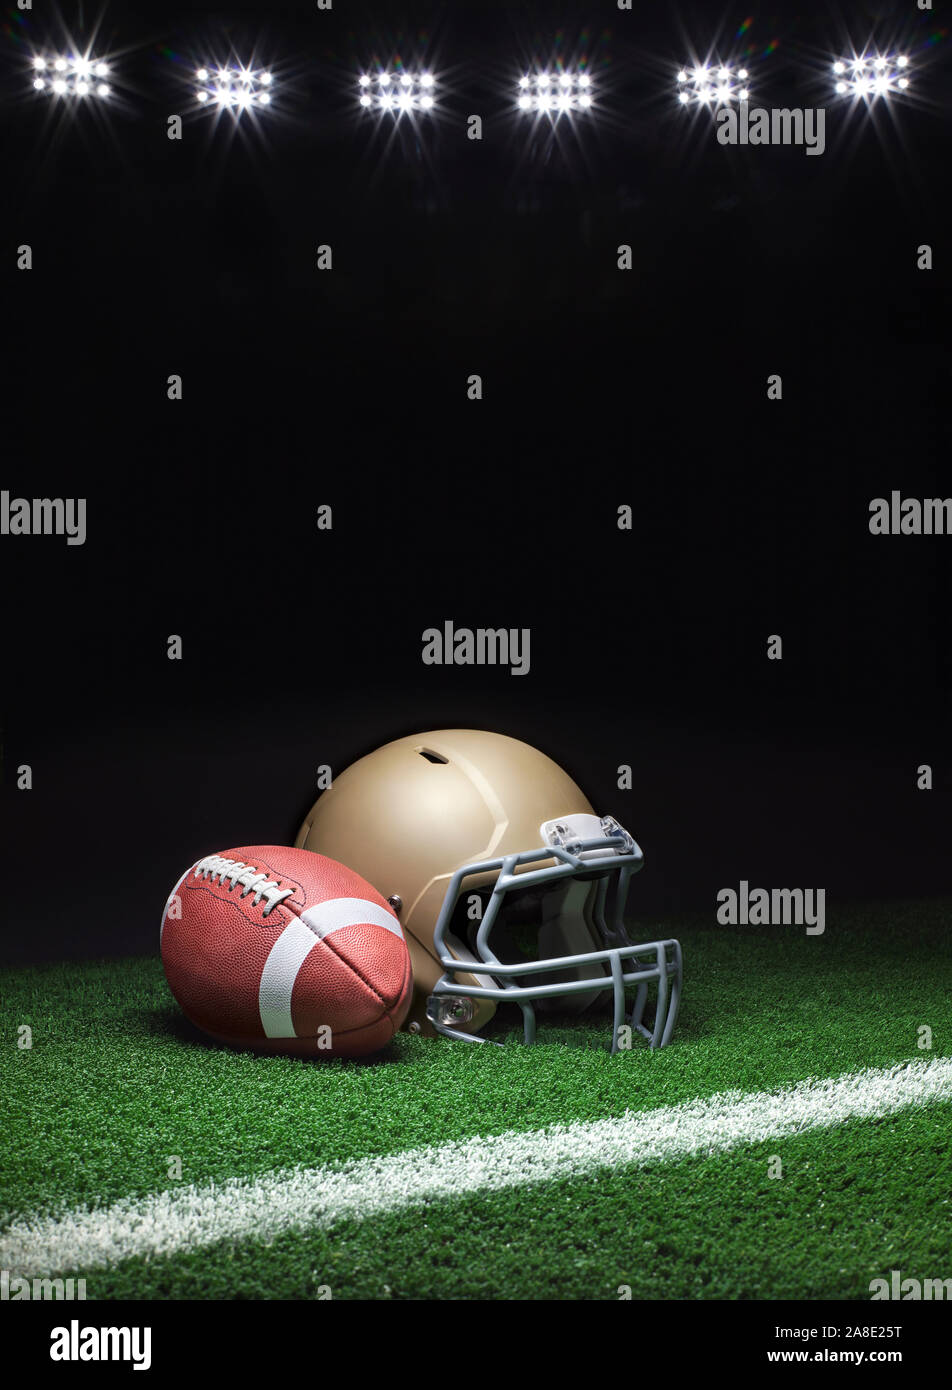 Un portrait d'un casque de football d'or avec un ballon de football sur une pelouse avec bande et un arrière-plan sombre avec des lumières du stade Banque D'Images